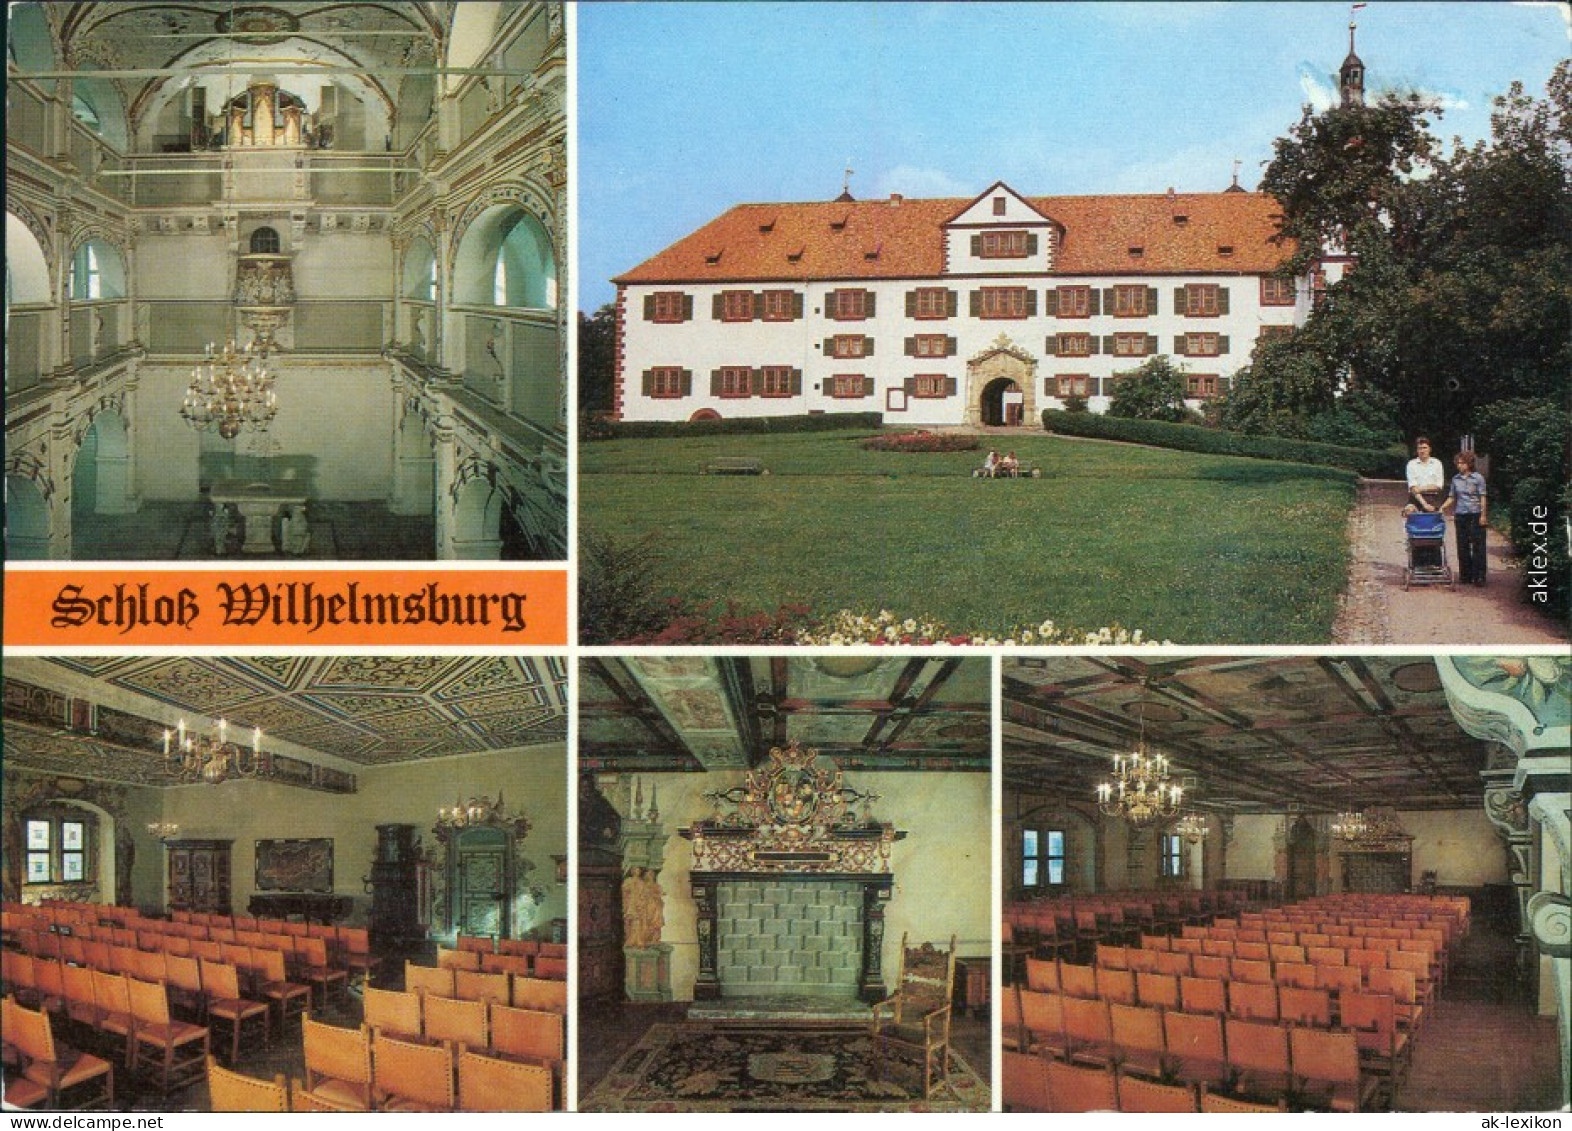 Ansichtskarte Schmalkalden Schloß Wilhelmsburg 2000 - Schmalkalden